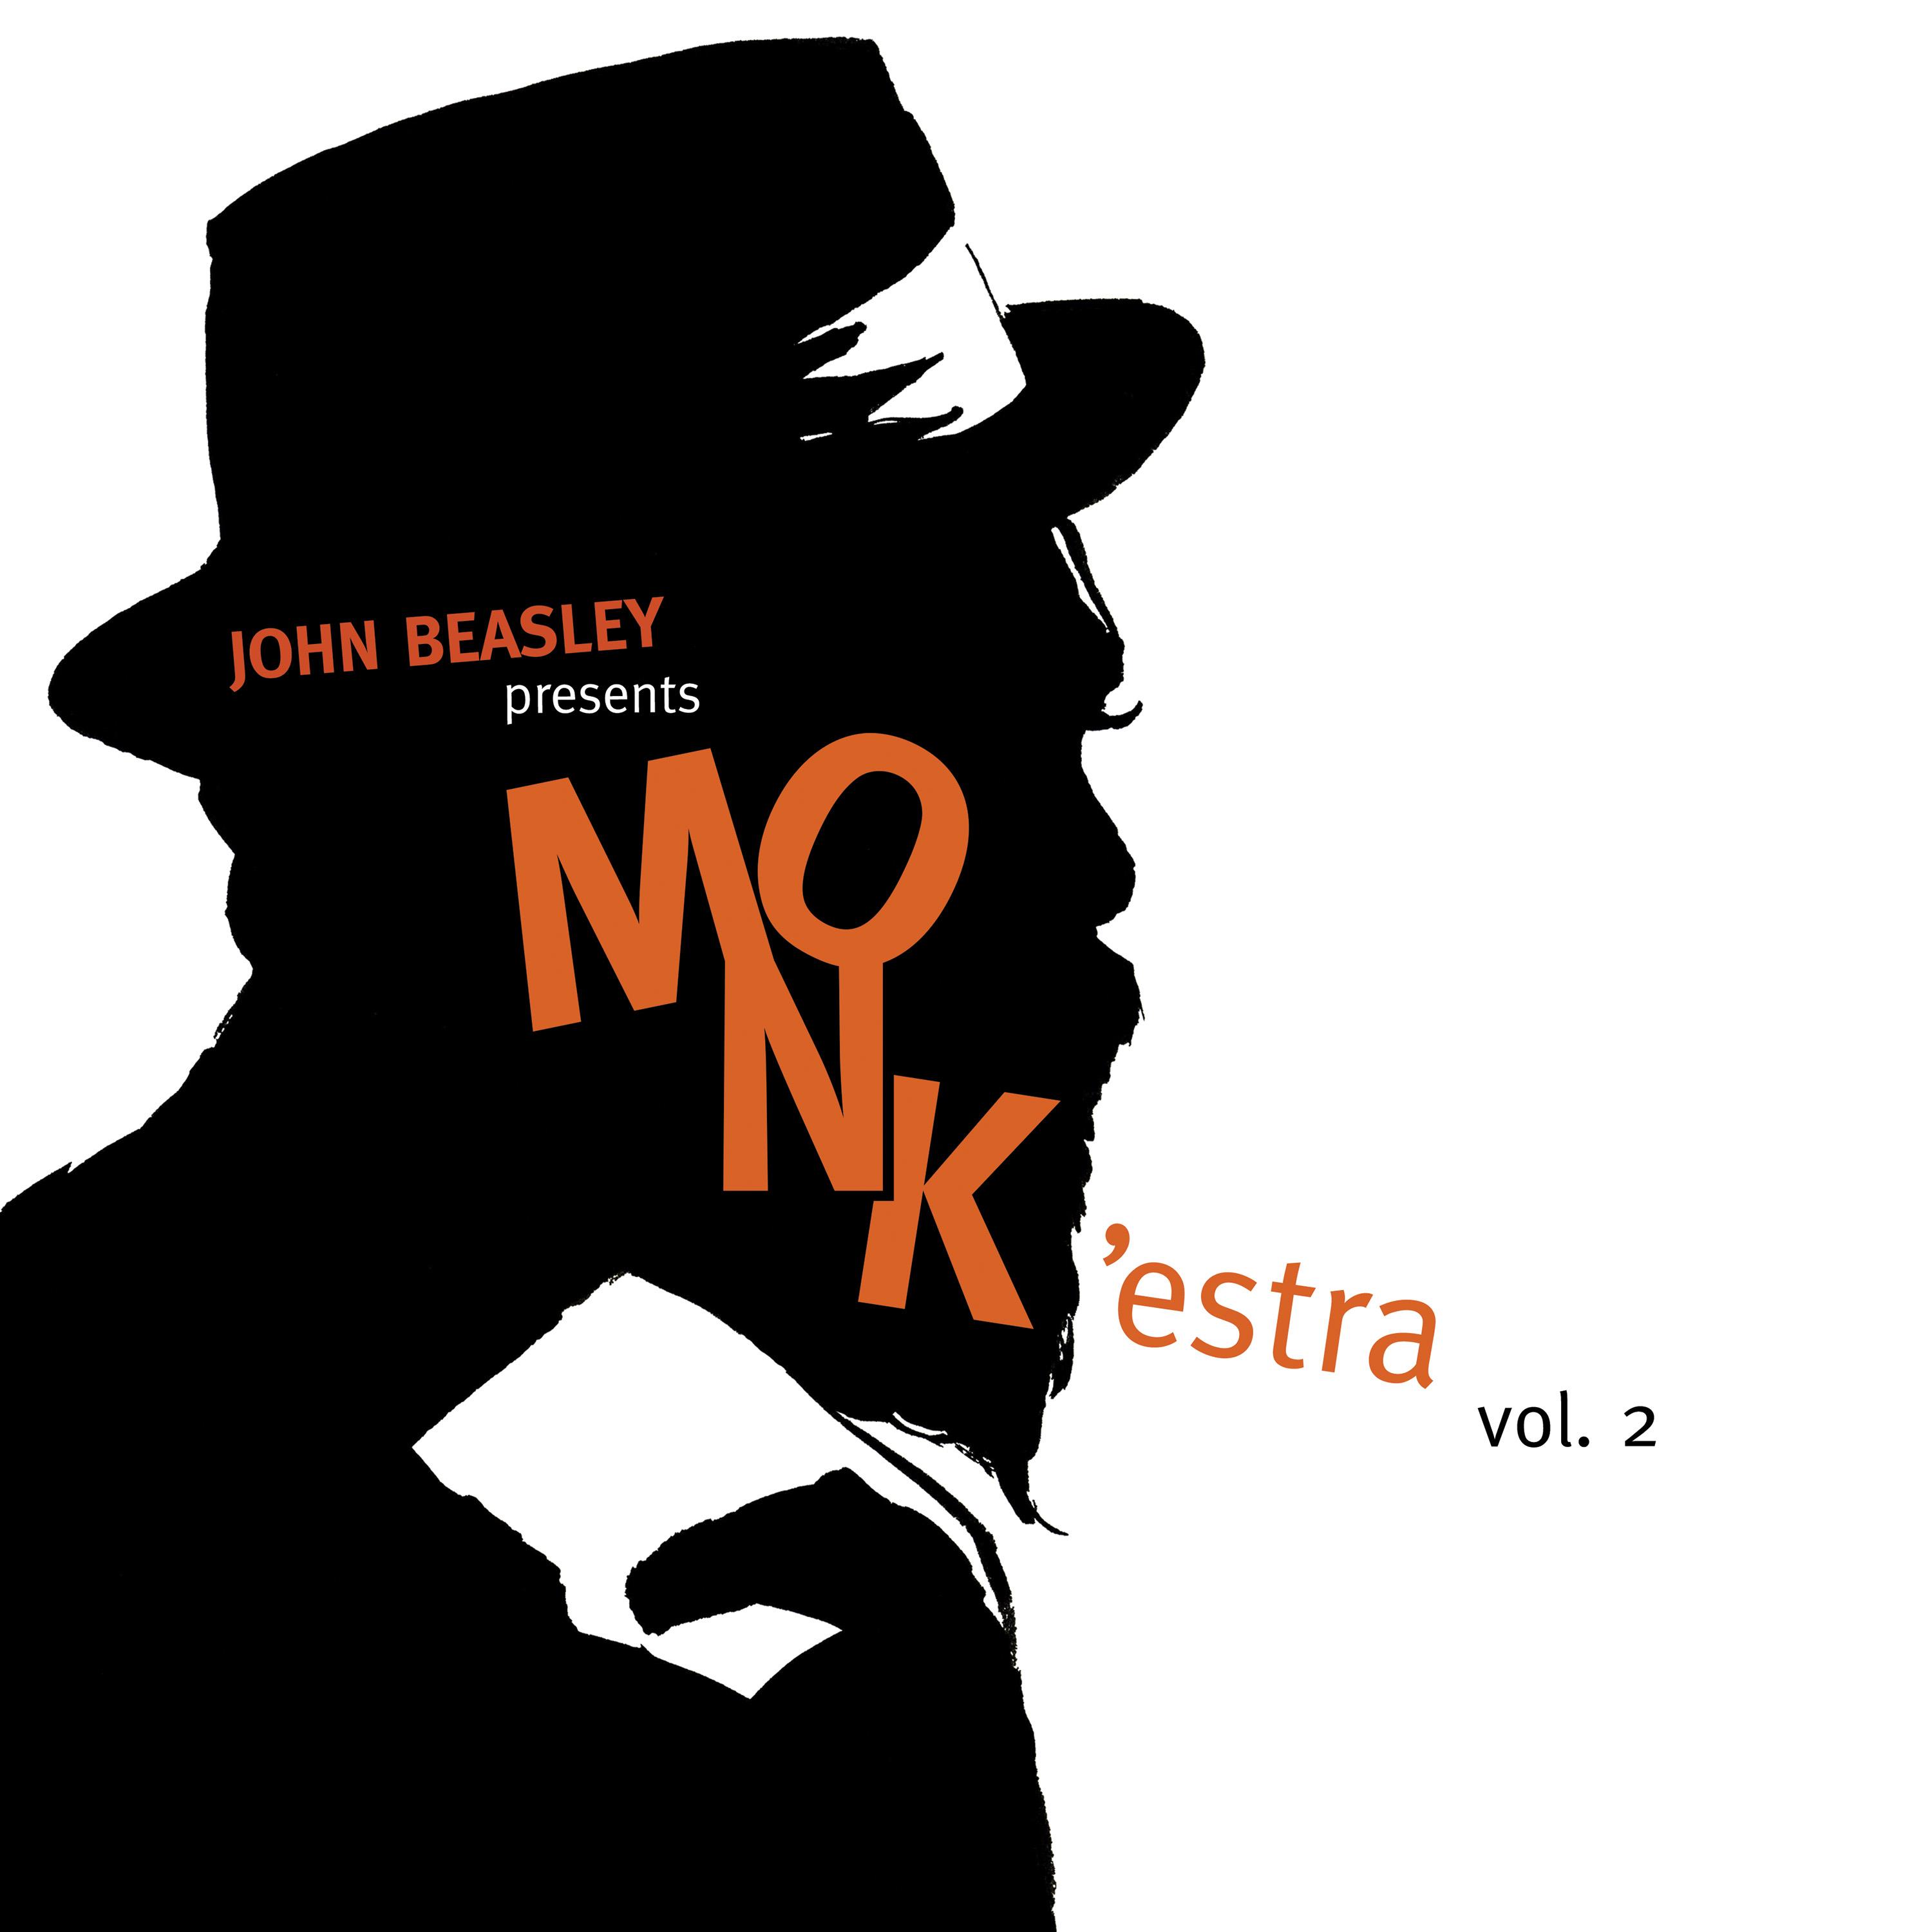 John Beasley - MONK’estra, Vol. 2 (2017) [HDTracks FLAC 24bit/44,1kHz]